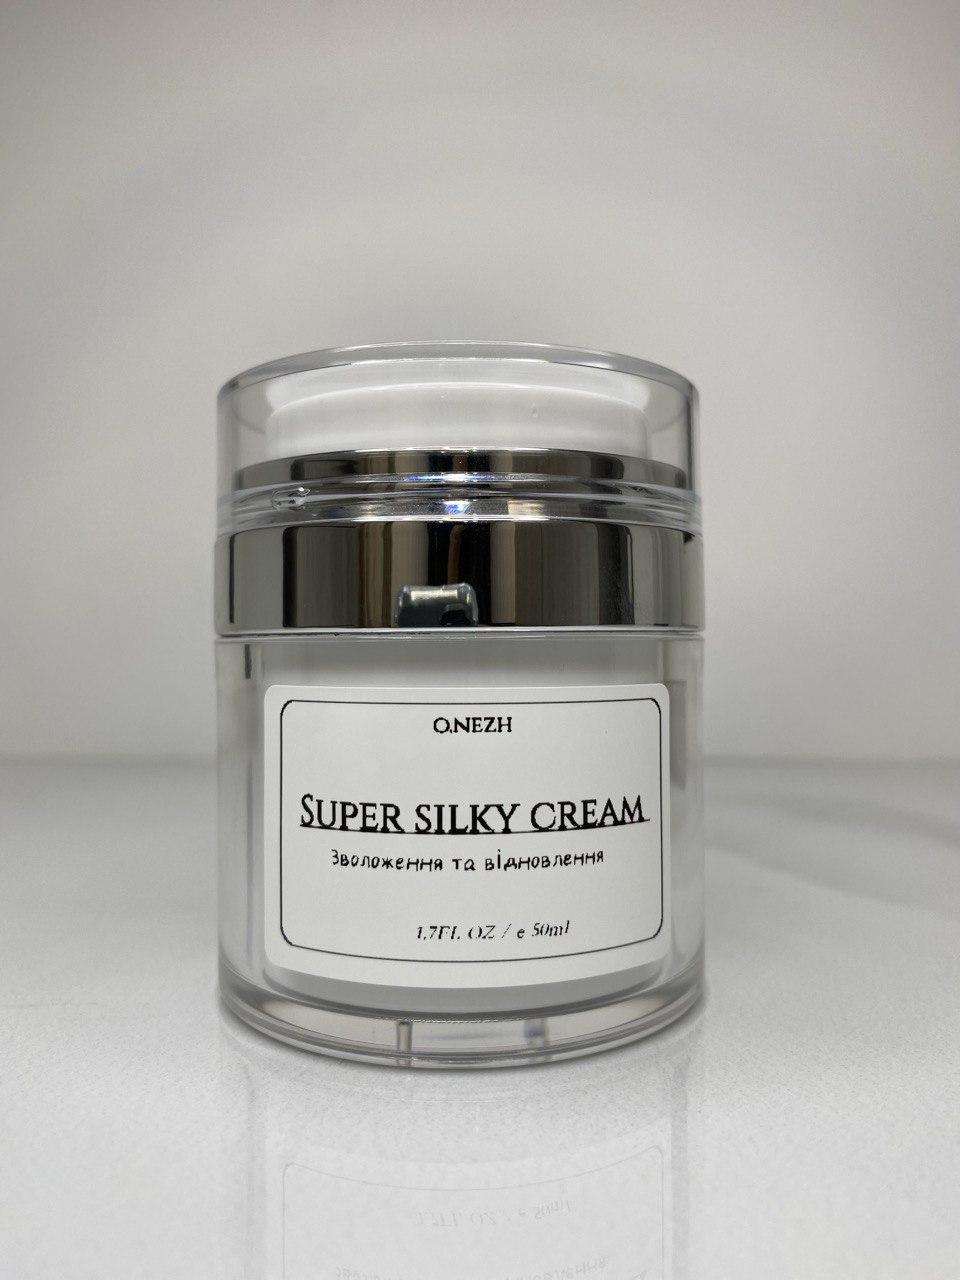 Super silky cream  зволоження та відновлення, фото 1